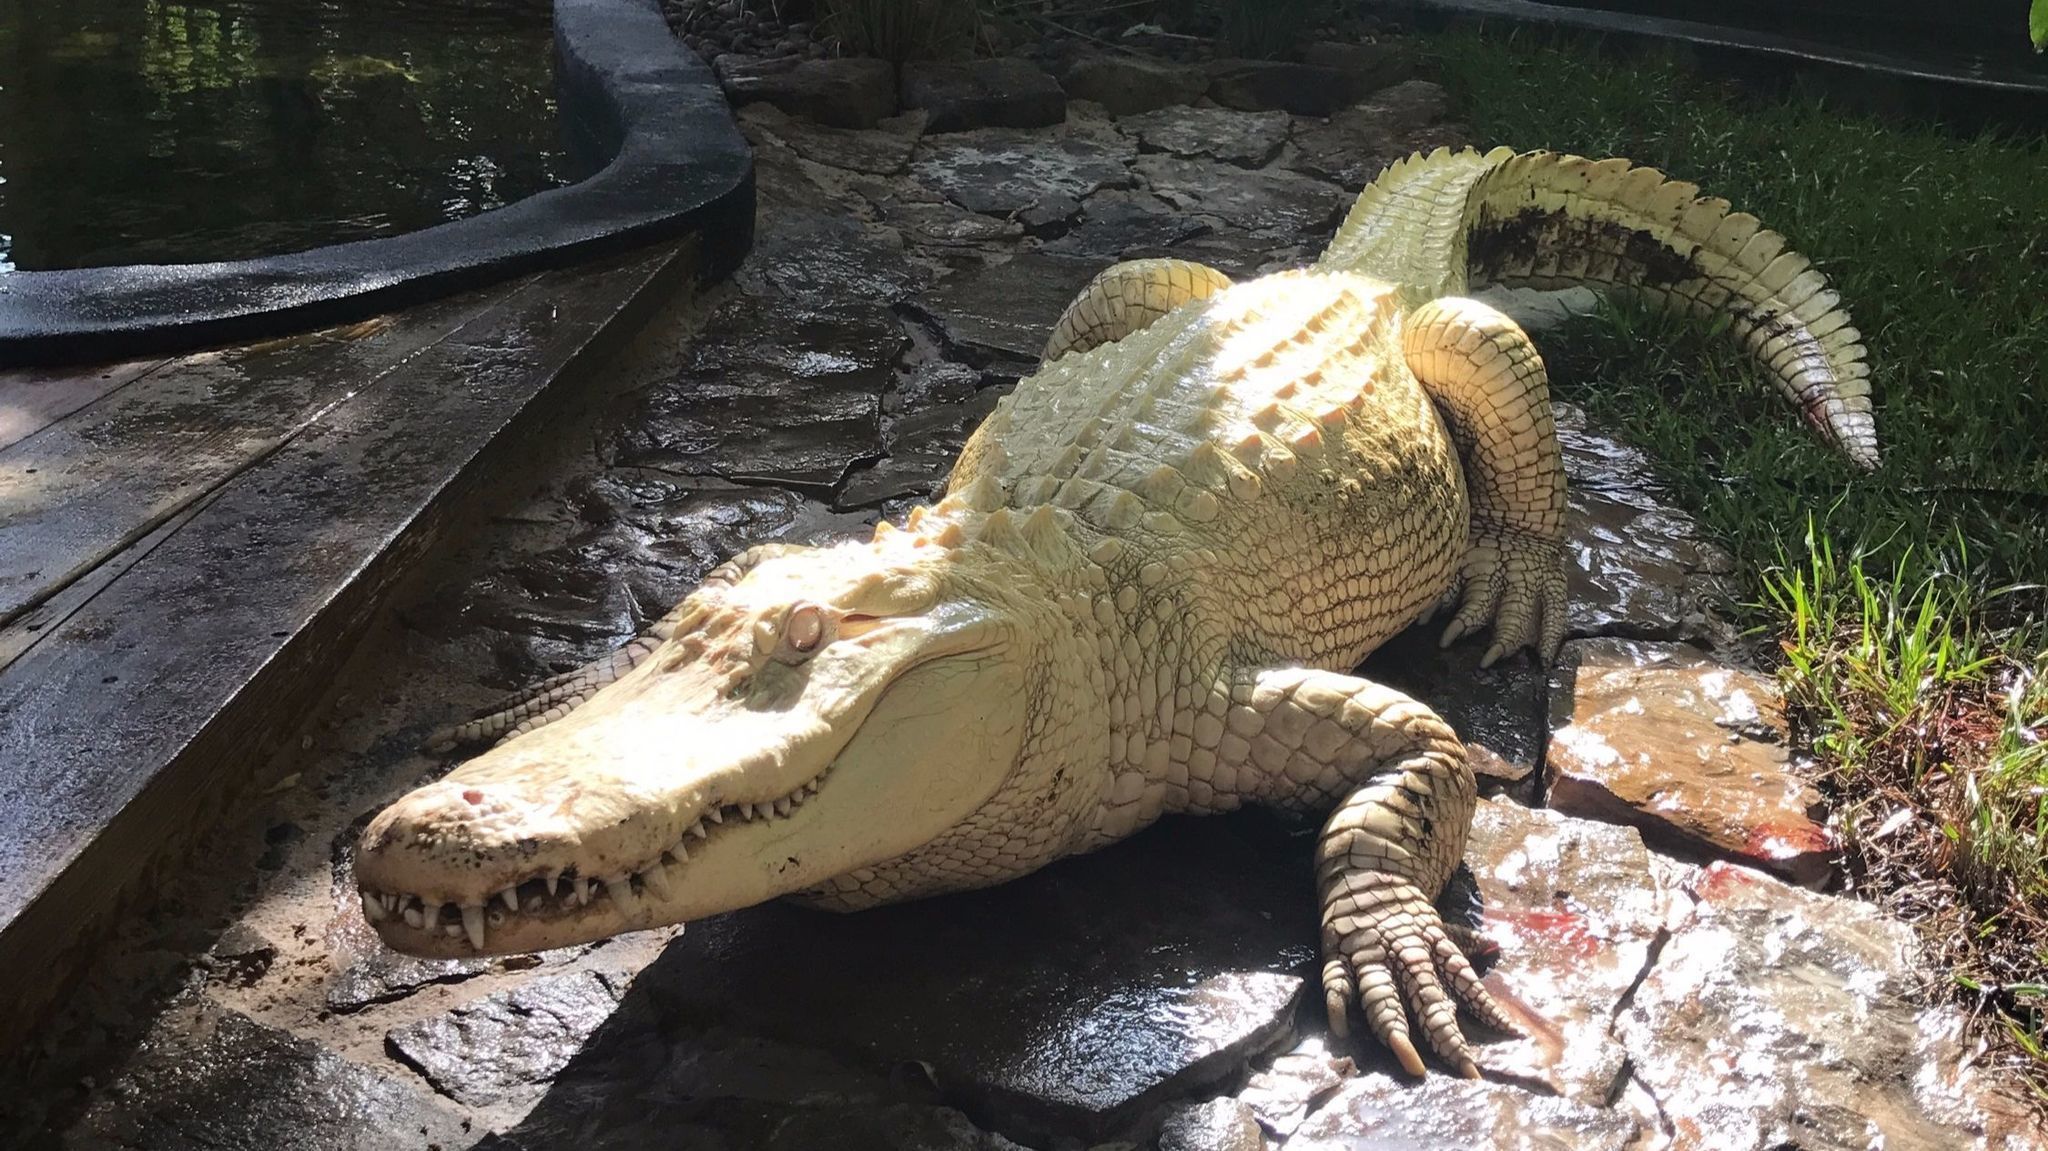 Albino alligators move into Wild Florida attraction - Orlando Sentinel